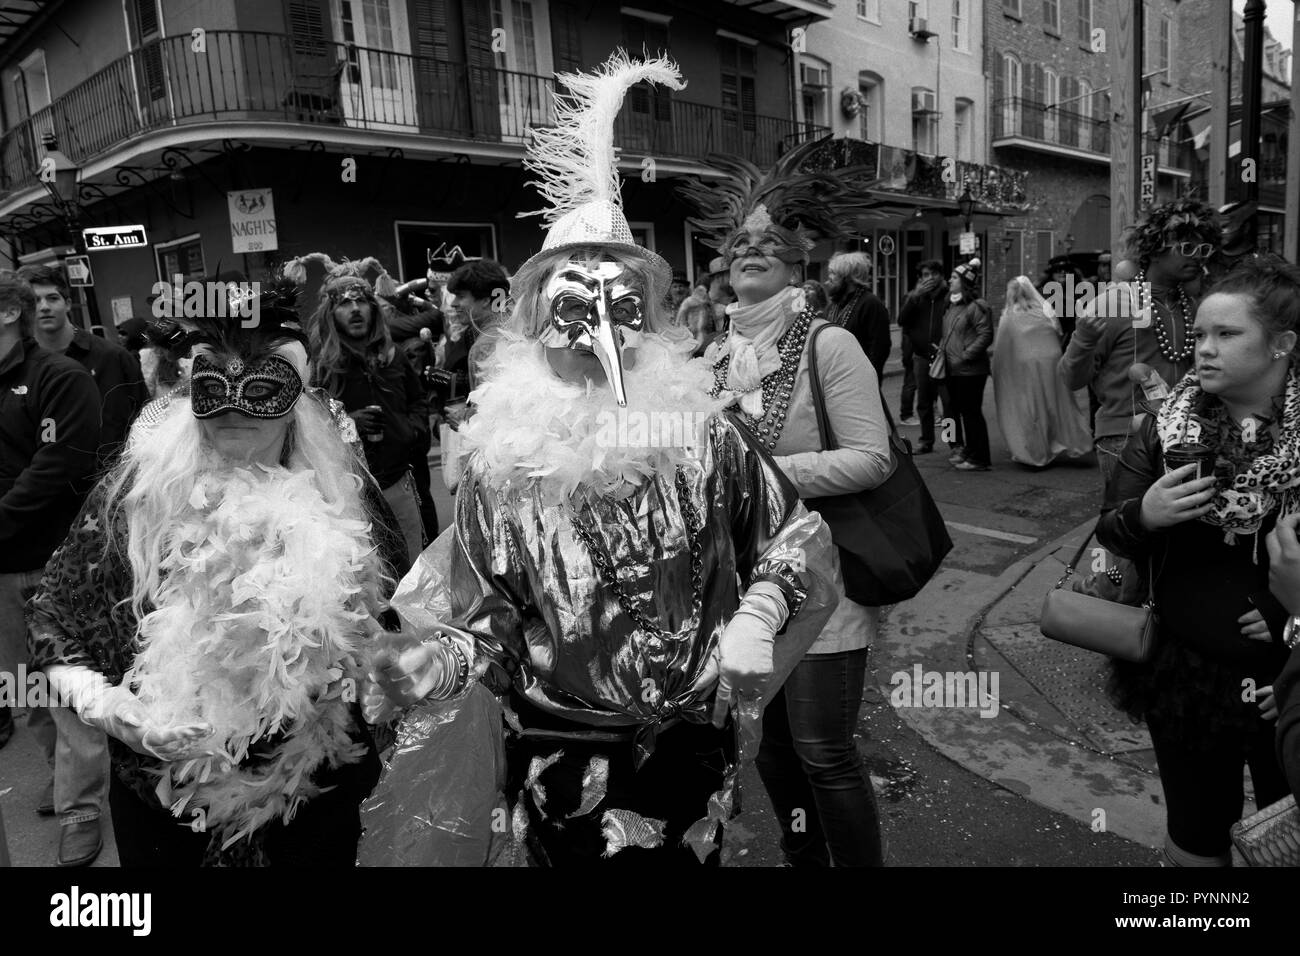 St Ann's Parade, persone con maschere, Francese Quater, New Orleans, Louisiana, Stati Uniti d'America. Foto Stock